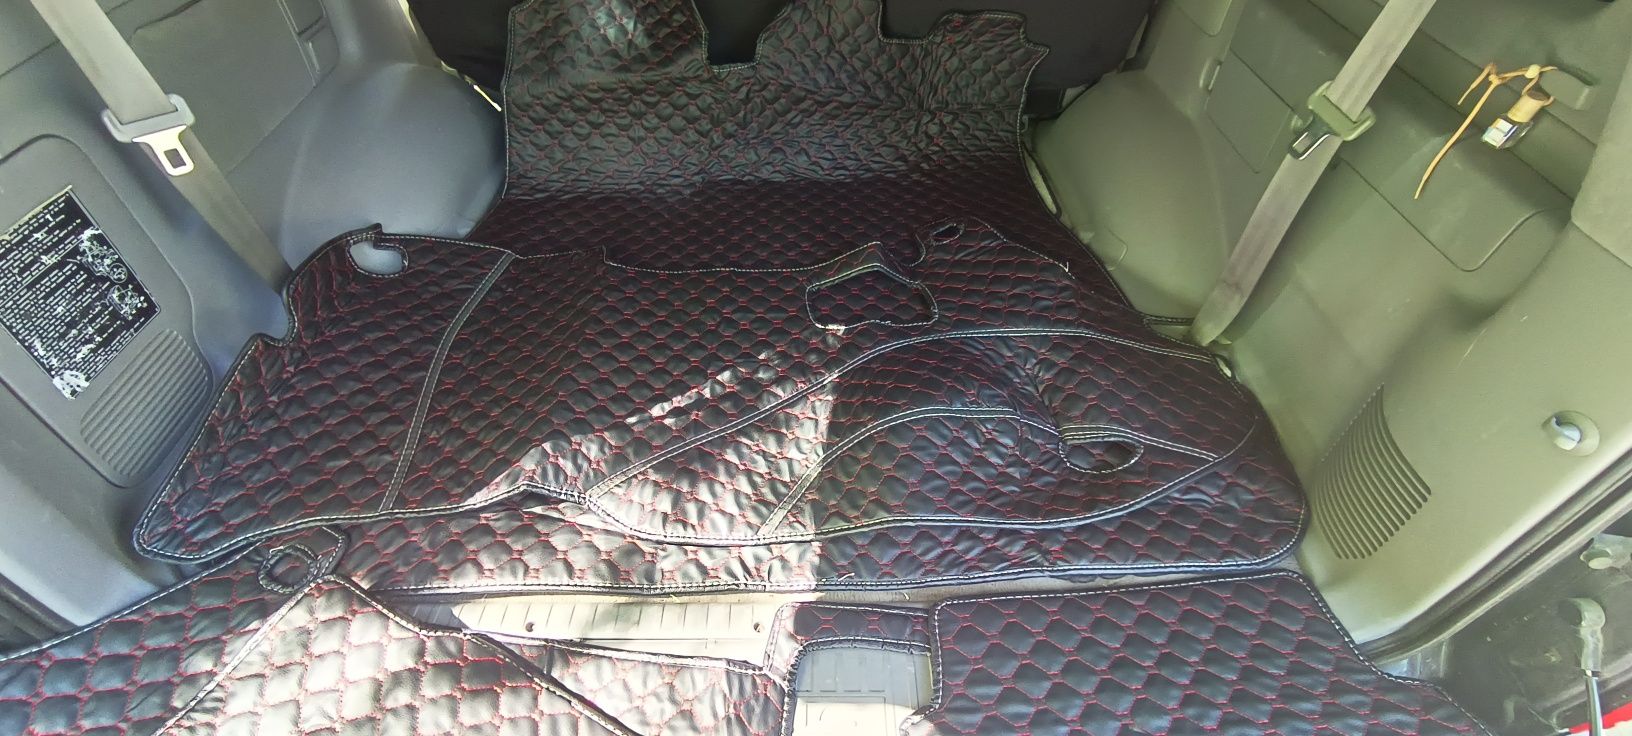 Продам ковры в автомобиль Лексус ЛХ 470 (пятиместный)